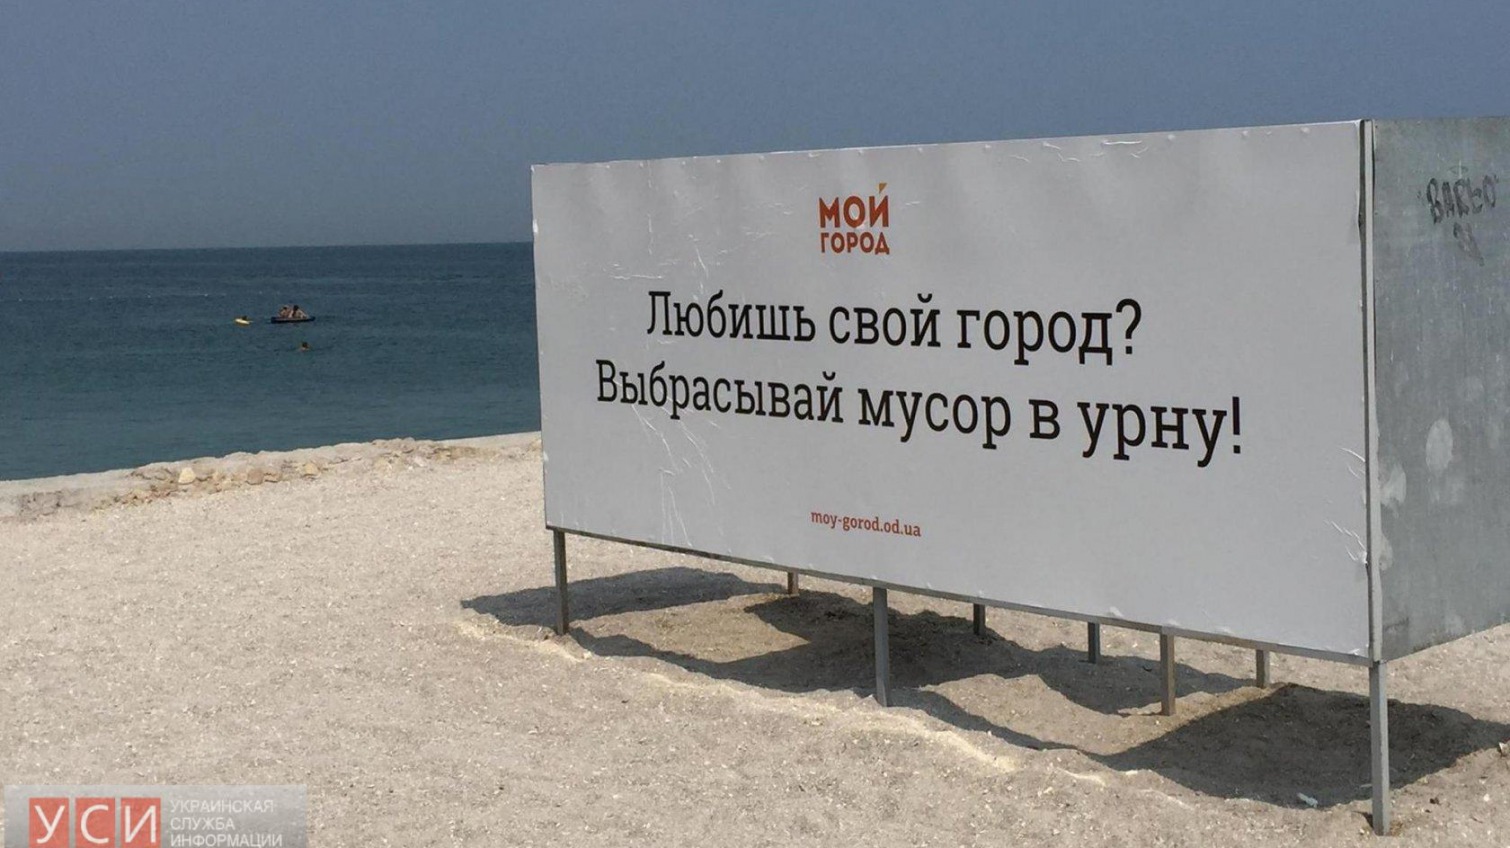 В Одессе появились раздевалки, «призывающие» не сорить на пляжах (фото) «фото»